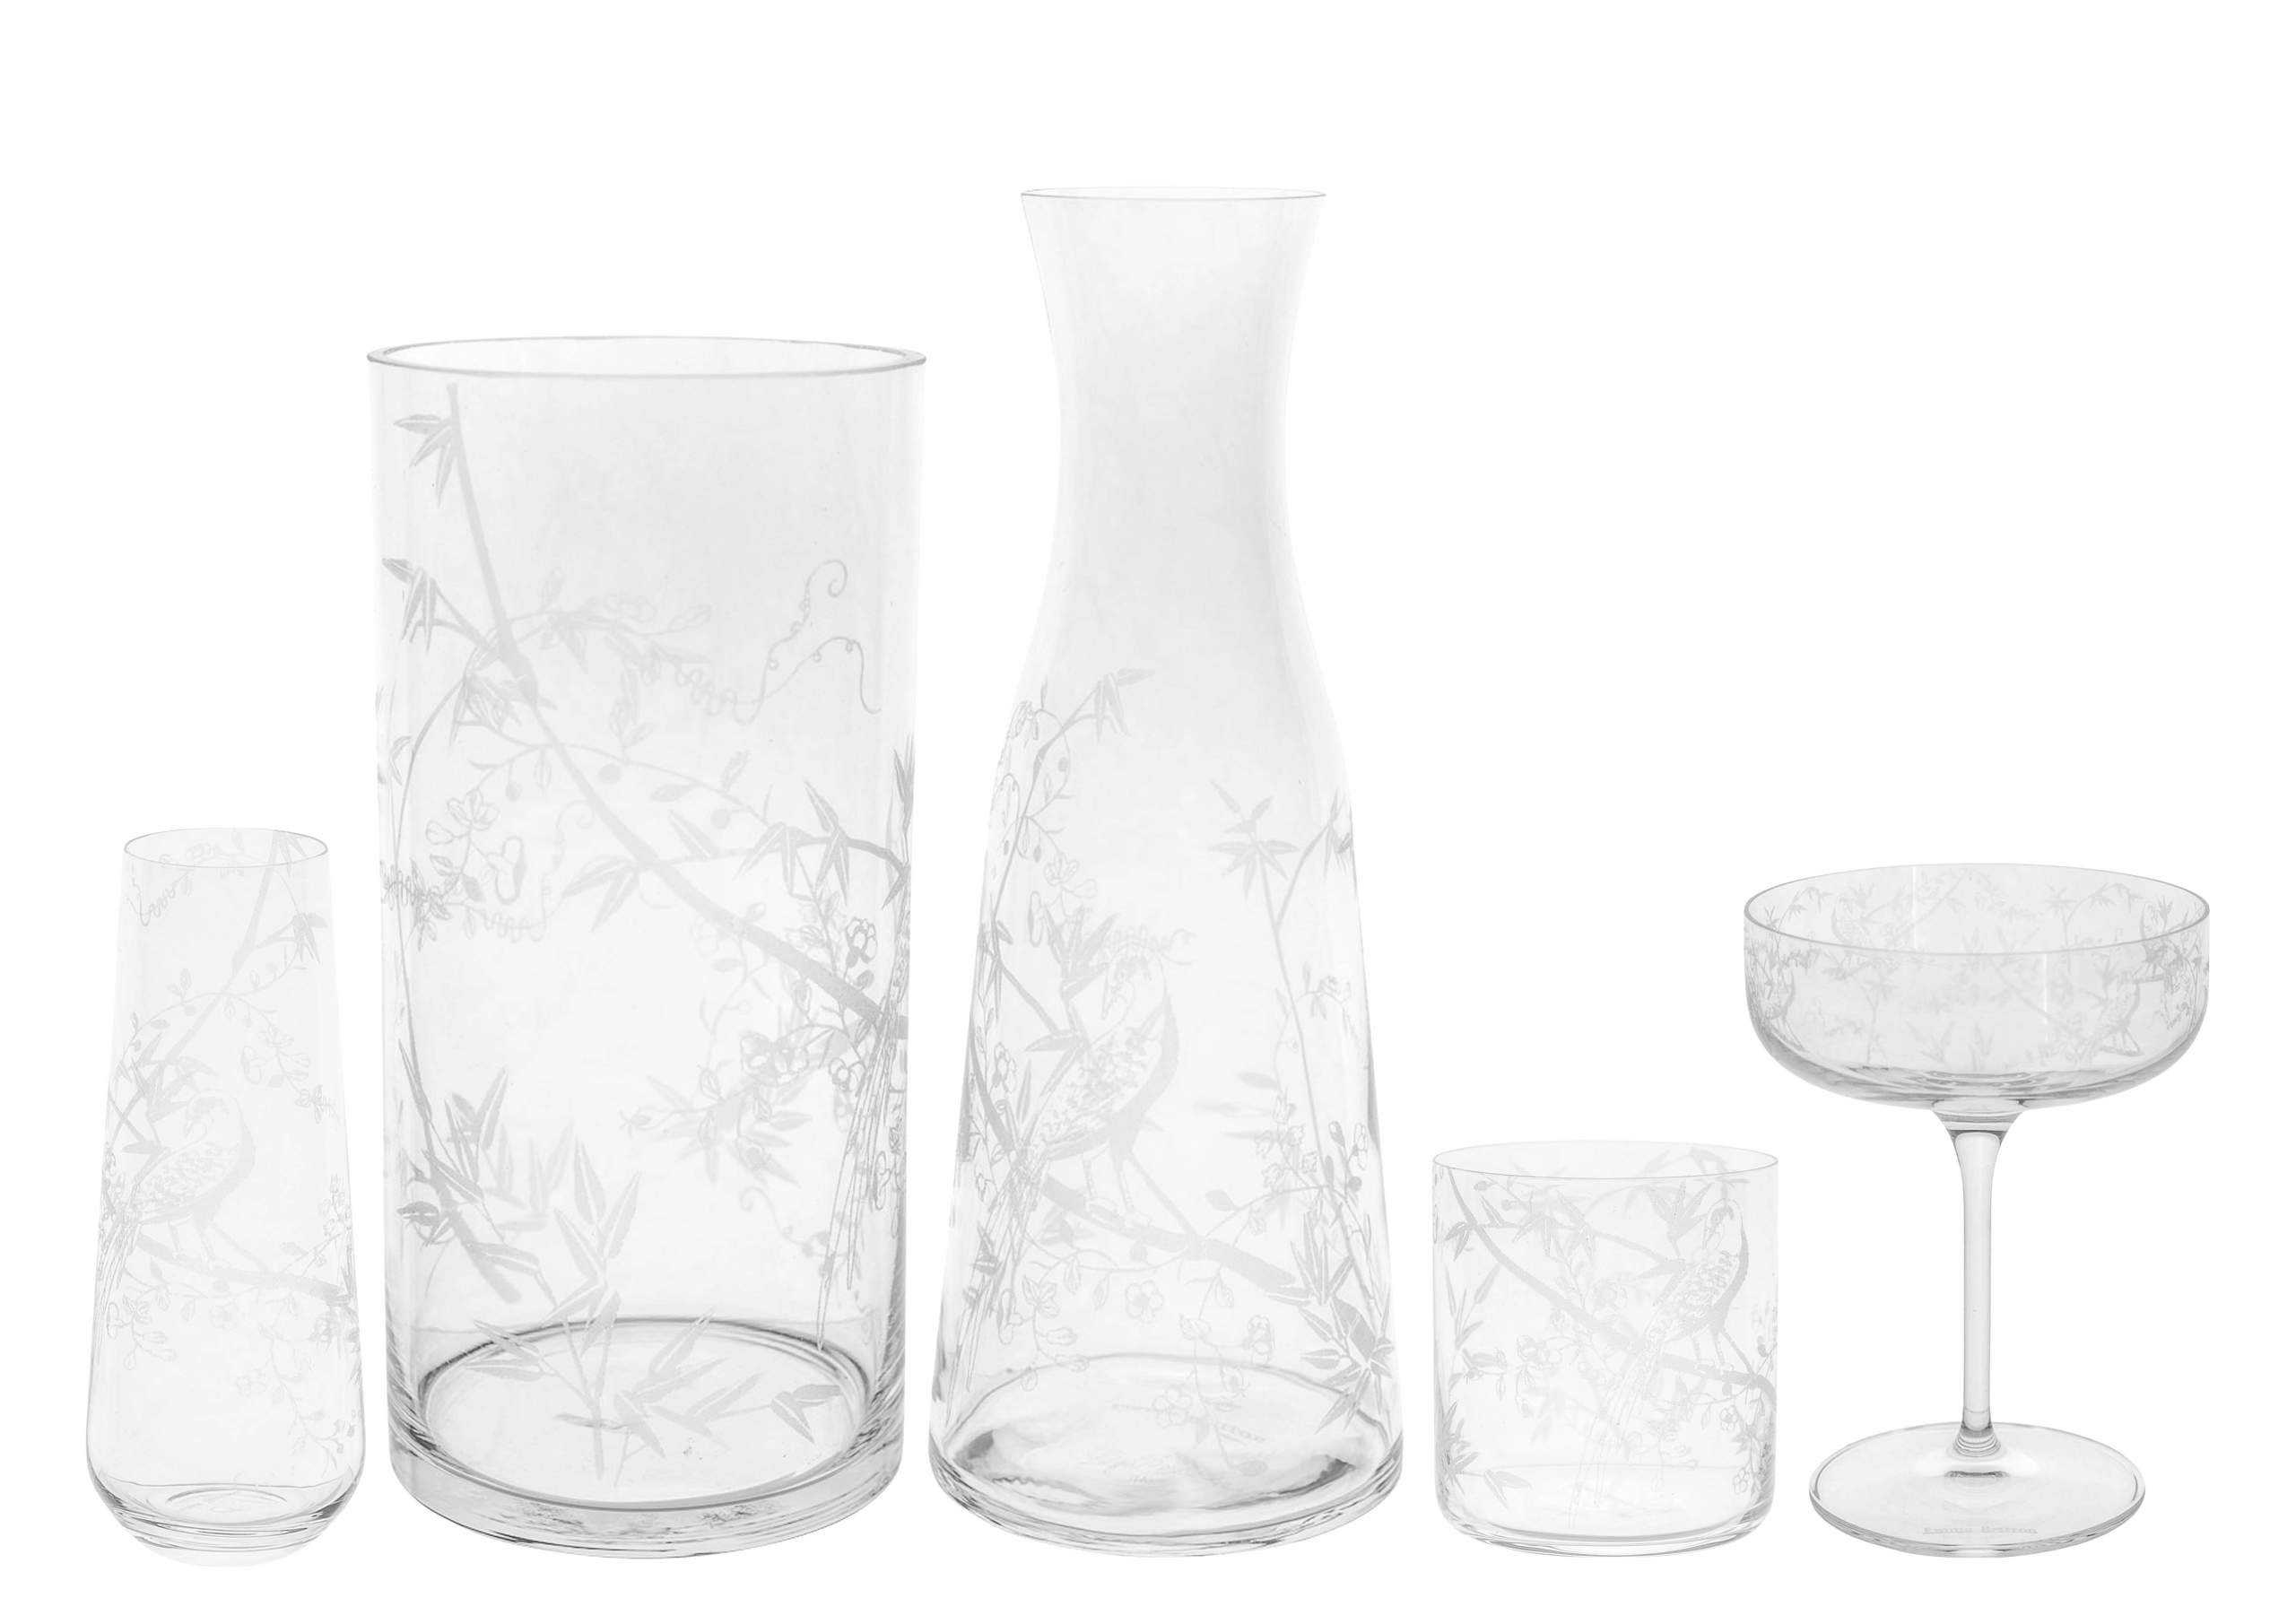 Emma-Britton-Decorative-Glass-Designer-Chinese-Wallpaper-Glassware-Collection